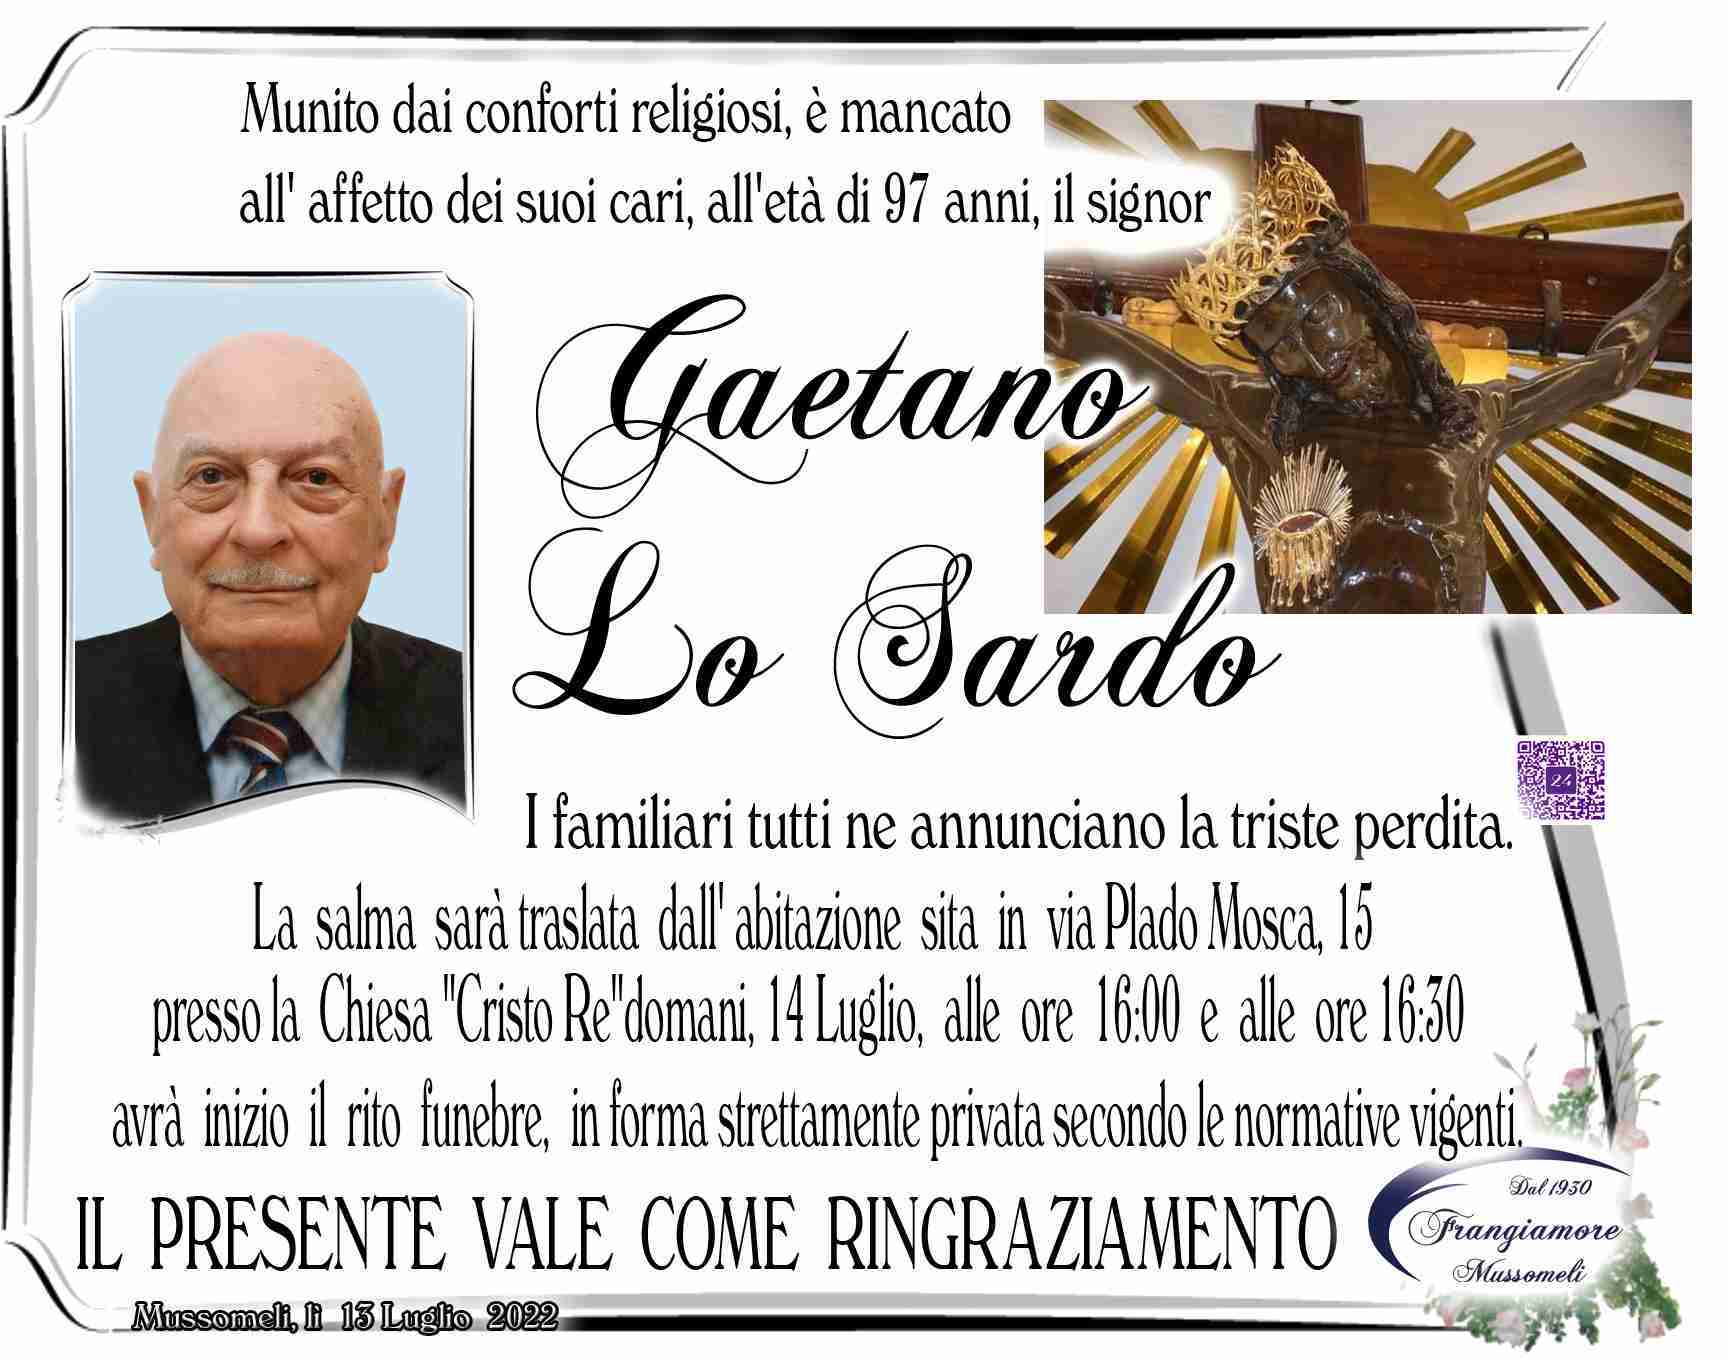 Gaetano Lo Sardo